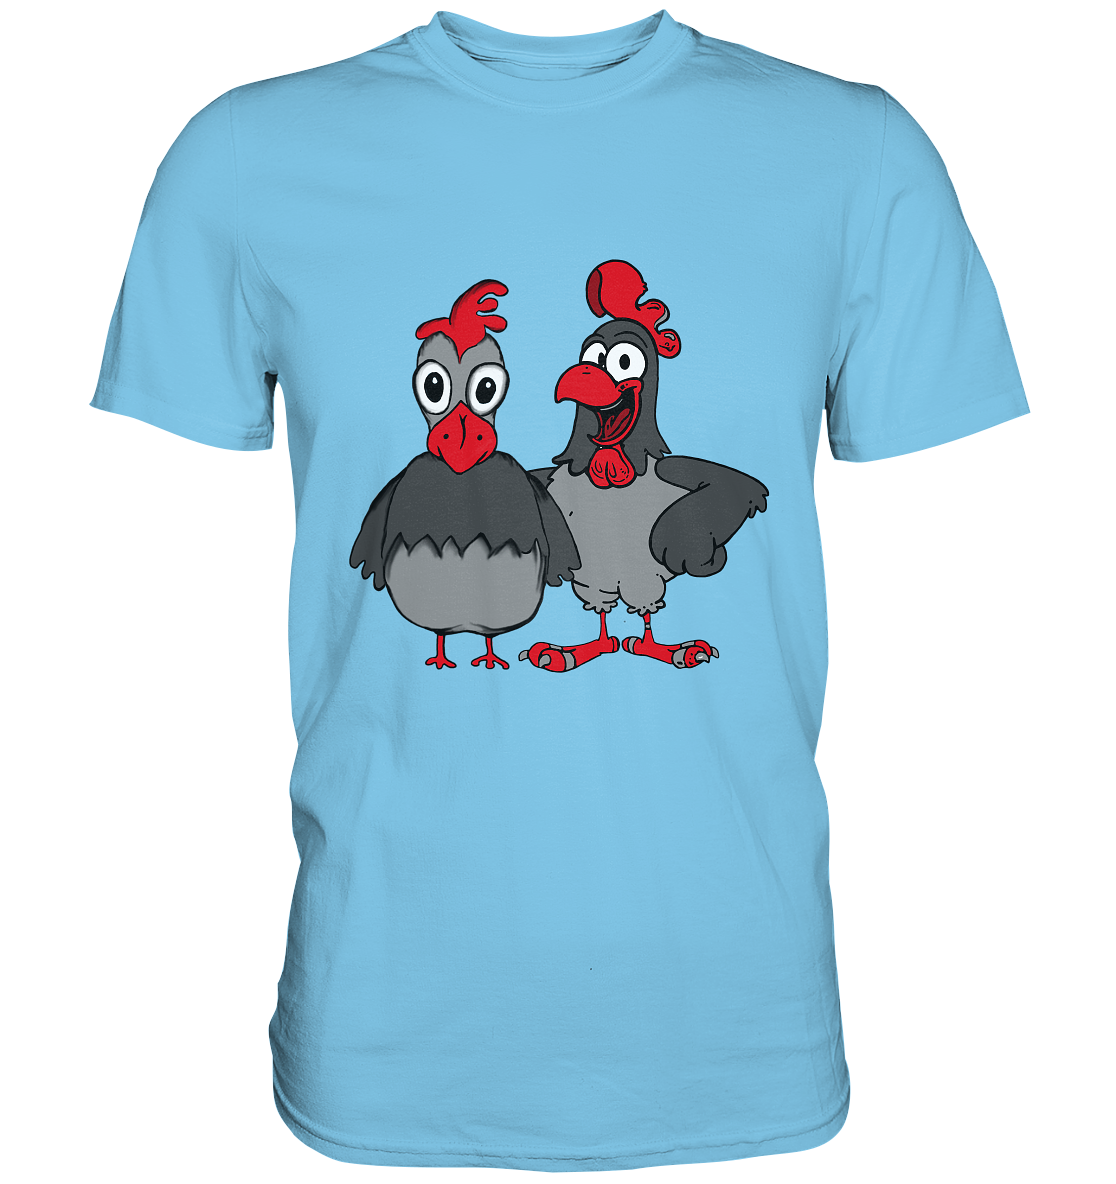 Hahn und Henne. Gockel Hühner Hühnerbauer - Premium Shirt